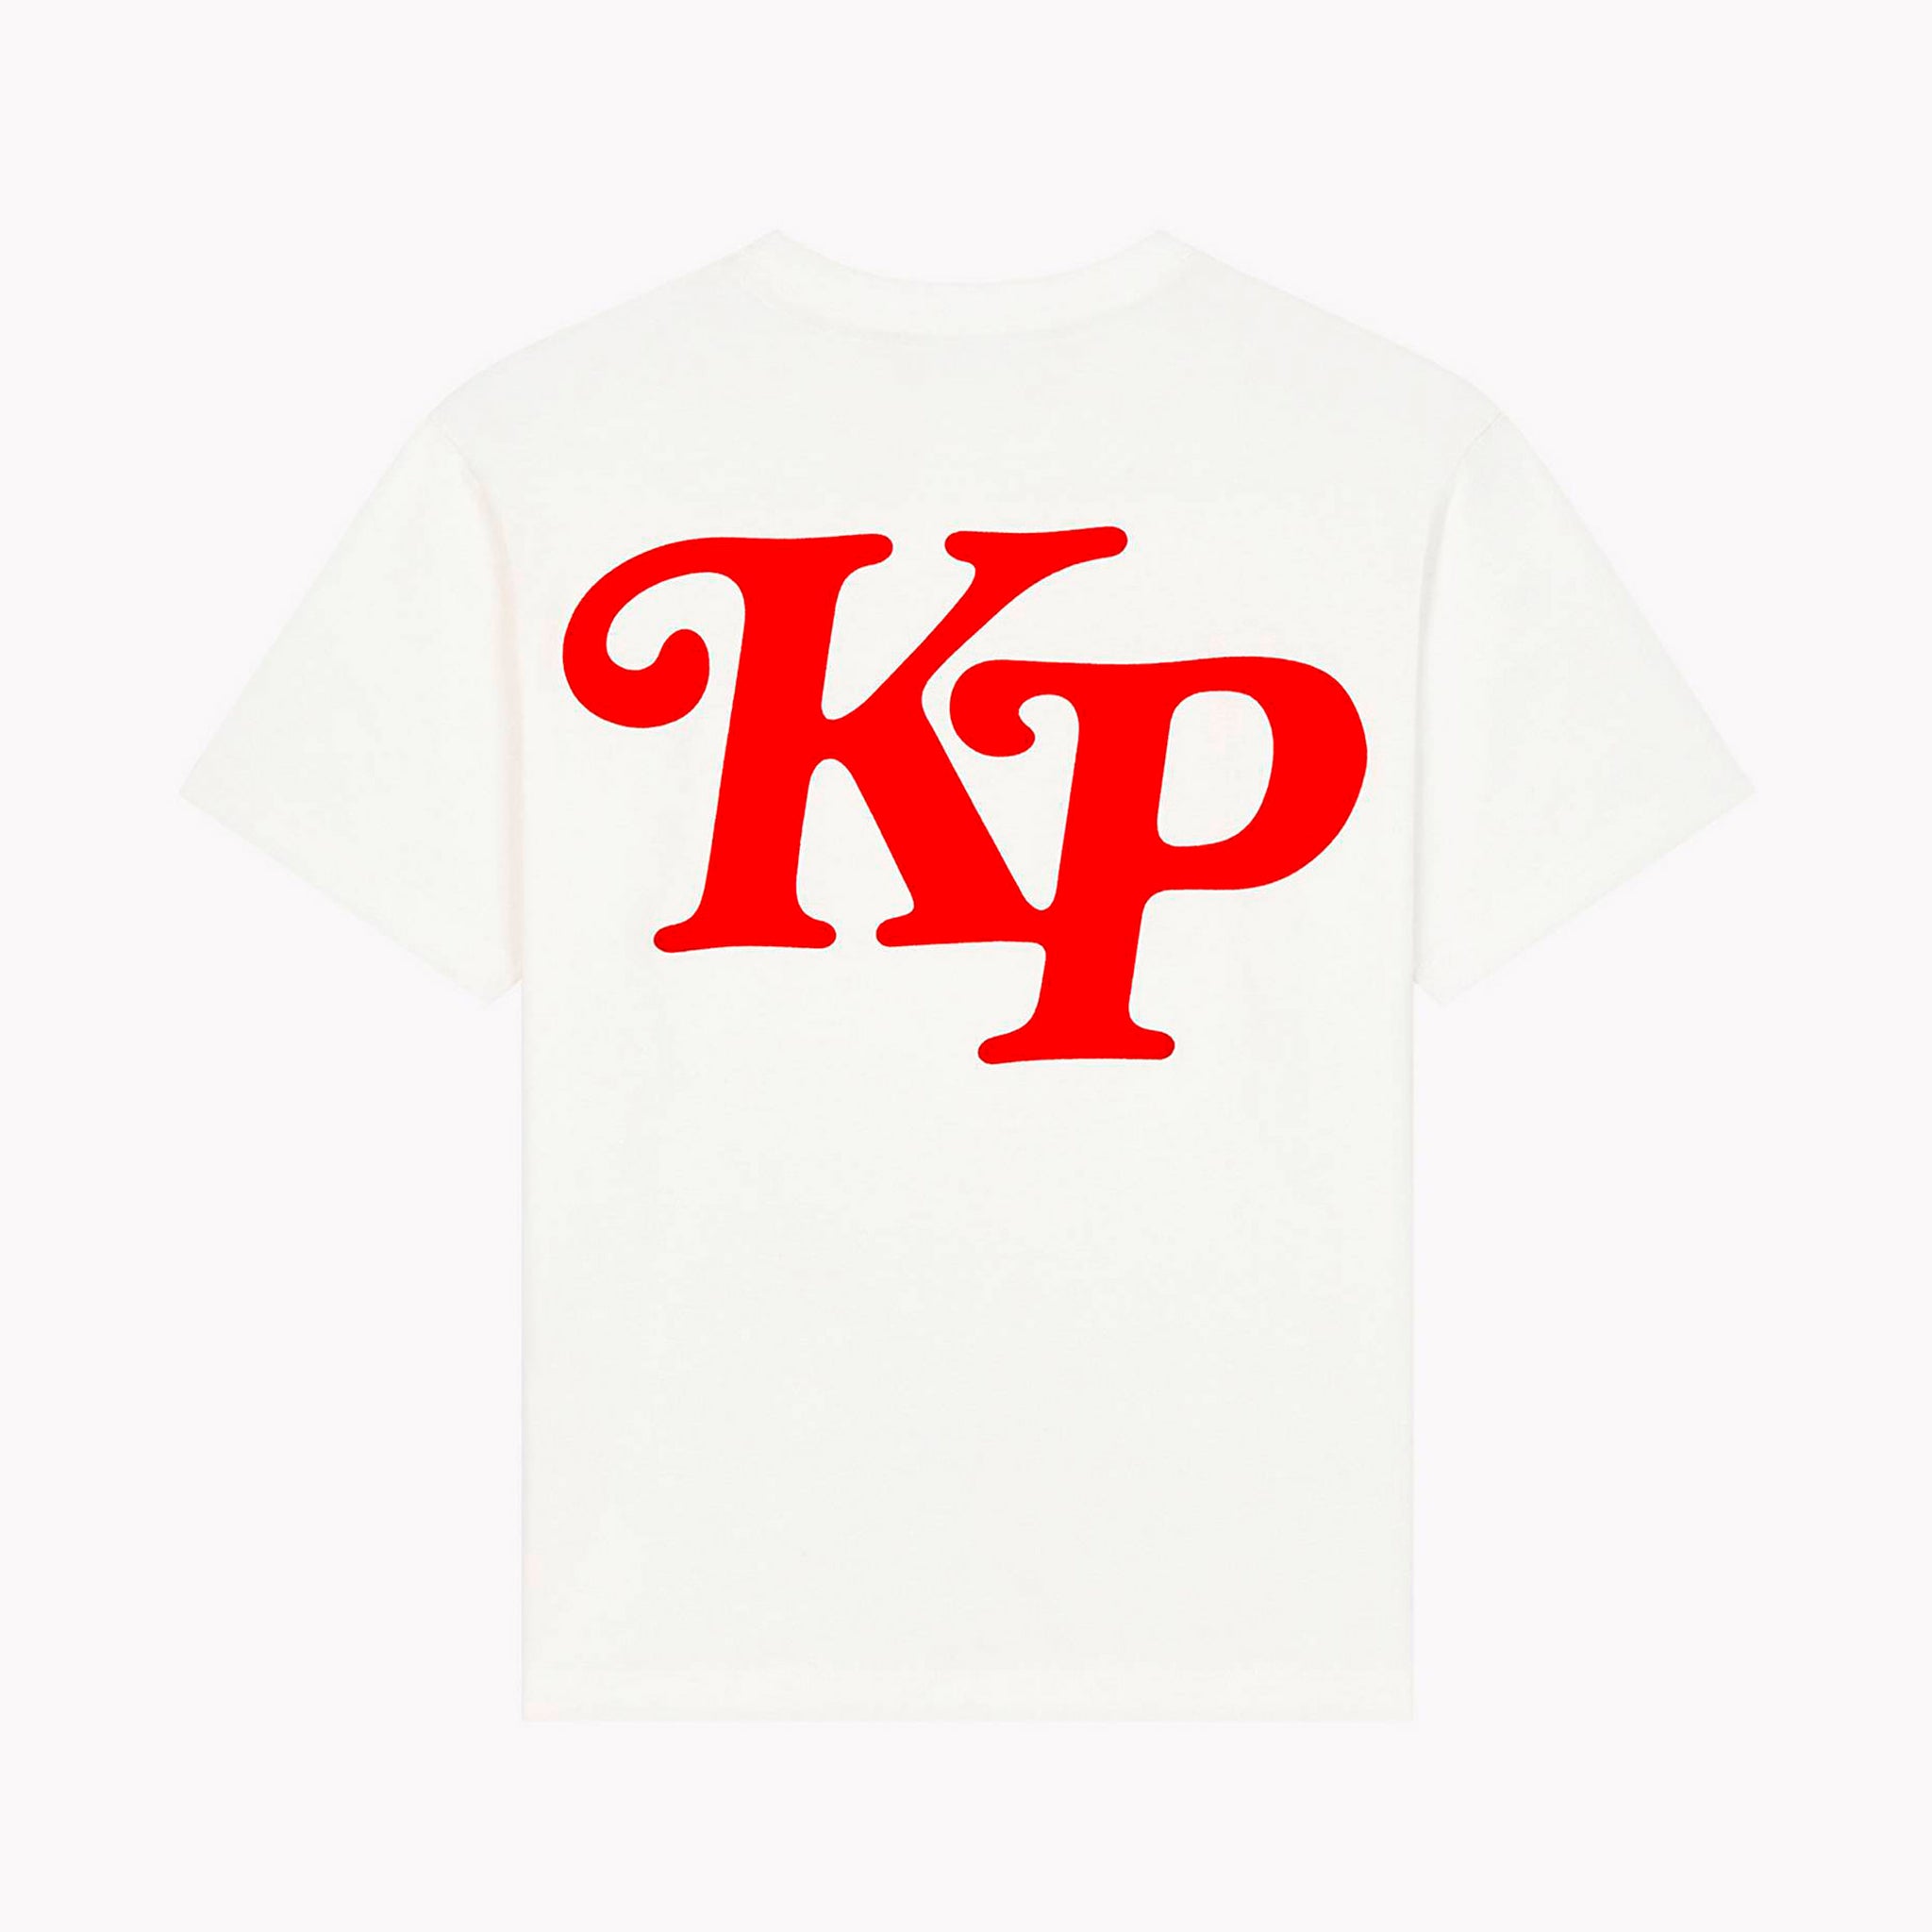 T-shirt Kenzo By Verdy Blanc